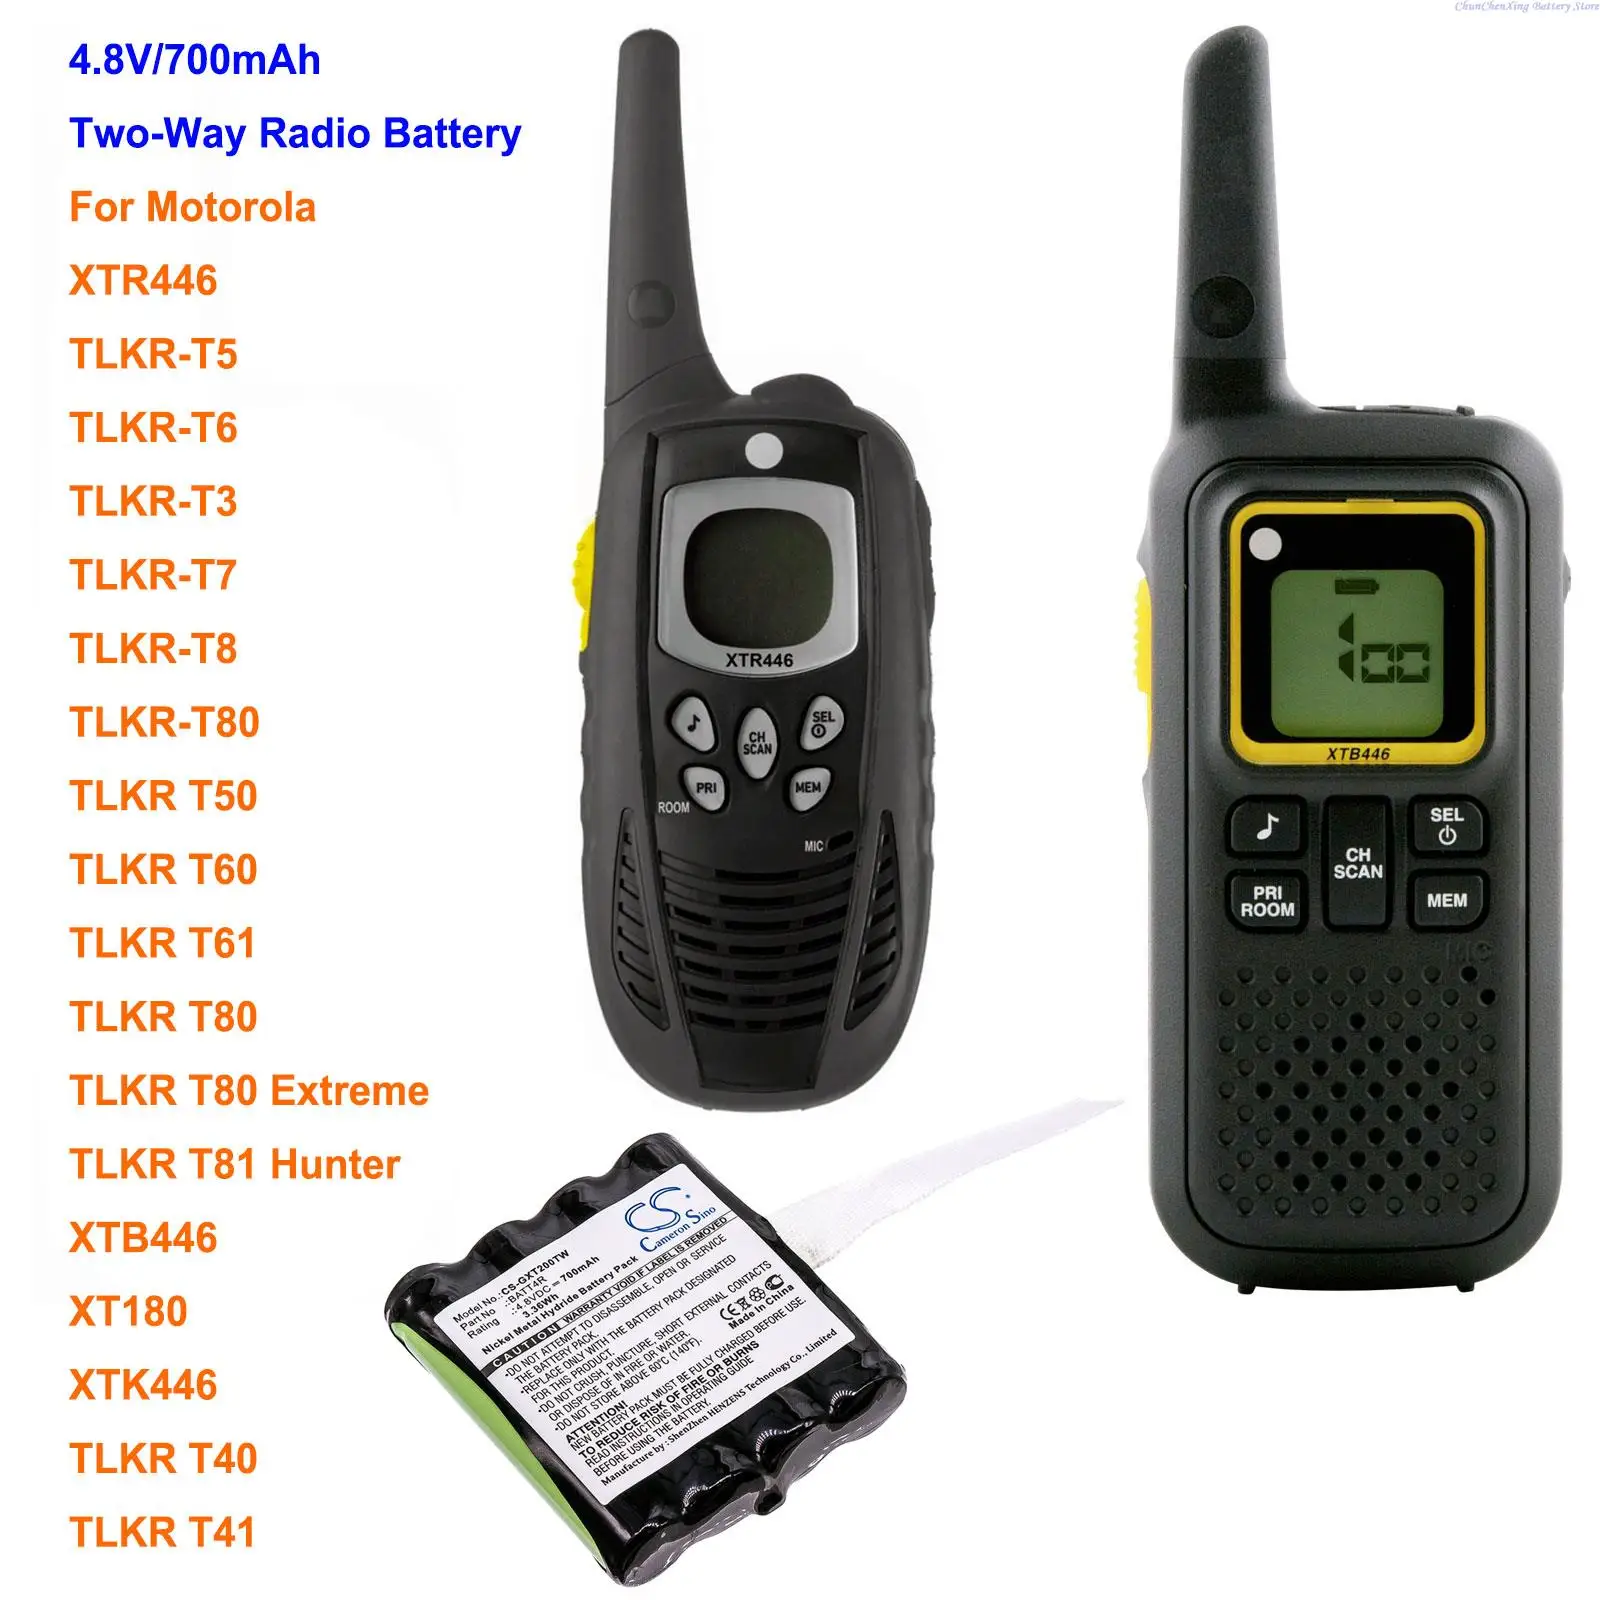 Камерън Китайско 700 mah батерия IXNN4002A за Motorola XTR446, XTB446, XT180, XTK446, TLKR-T5, TLKR-T6, TLKR T3, TLKR-T7, TLKR-Т8, TLKR-T80